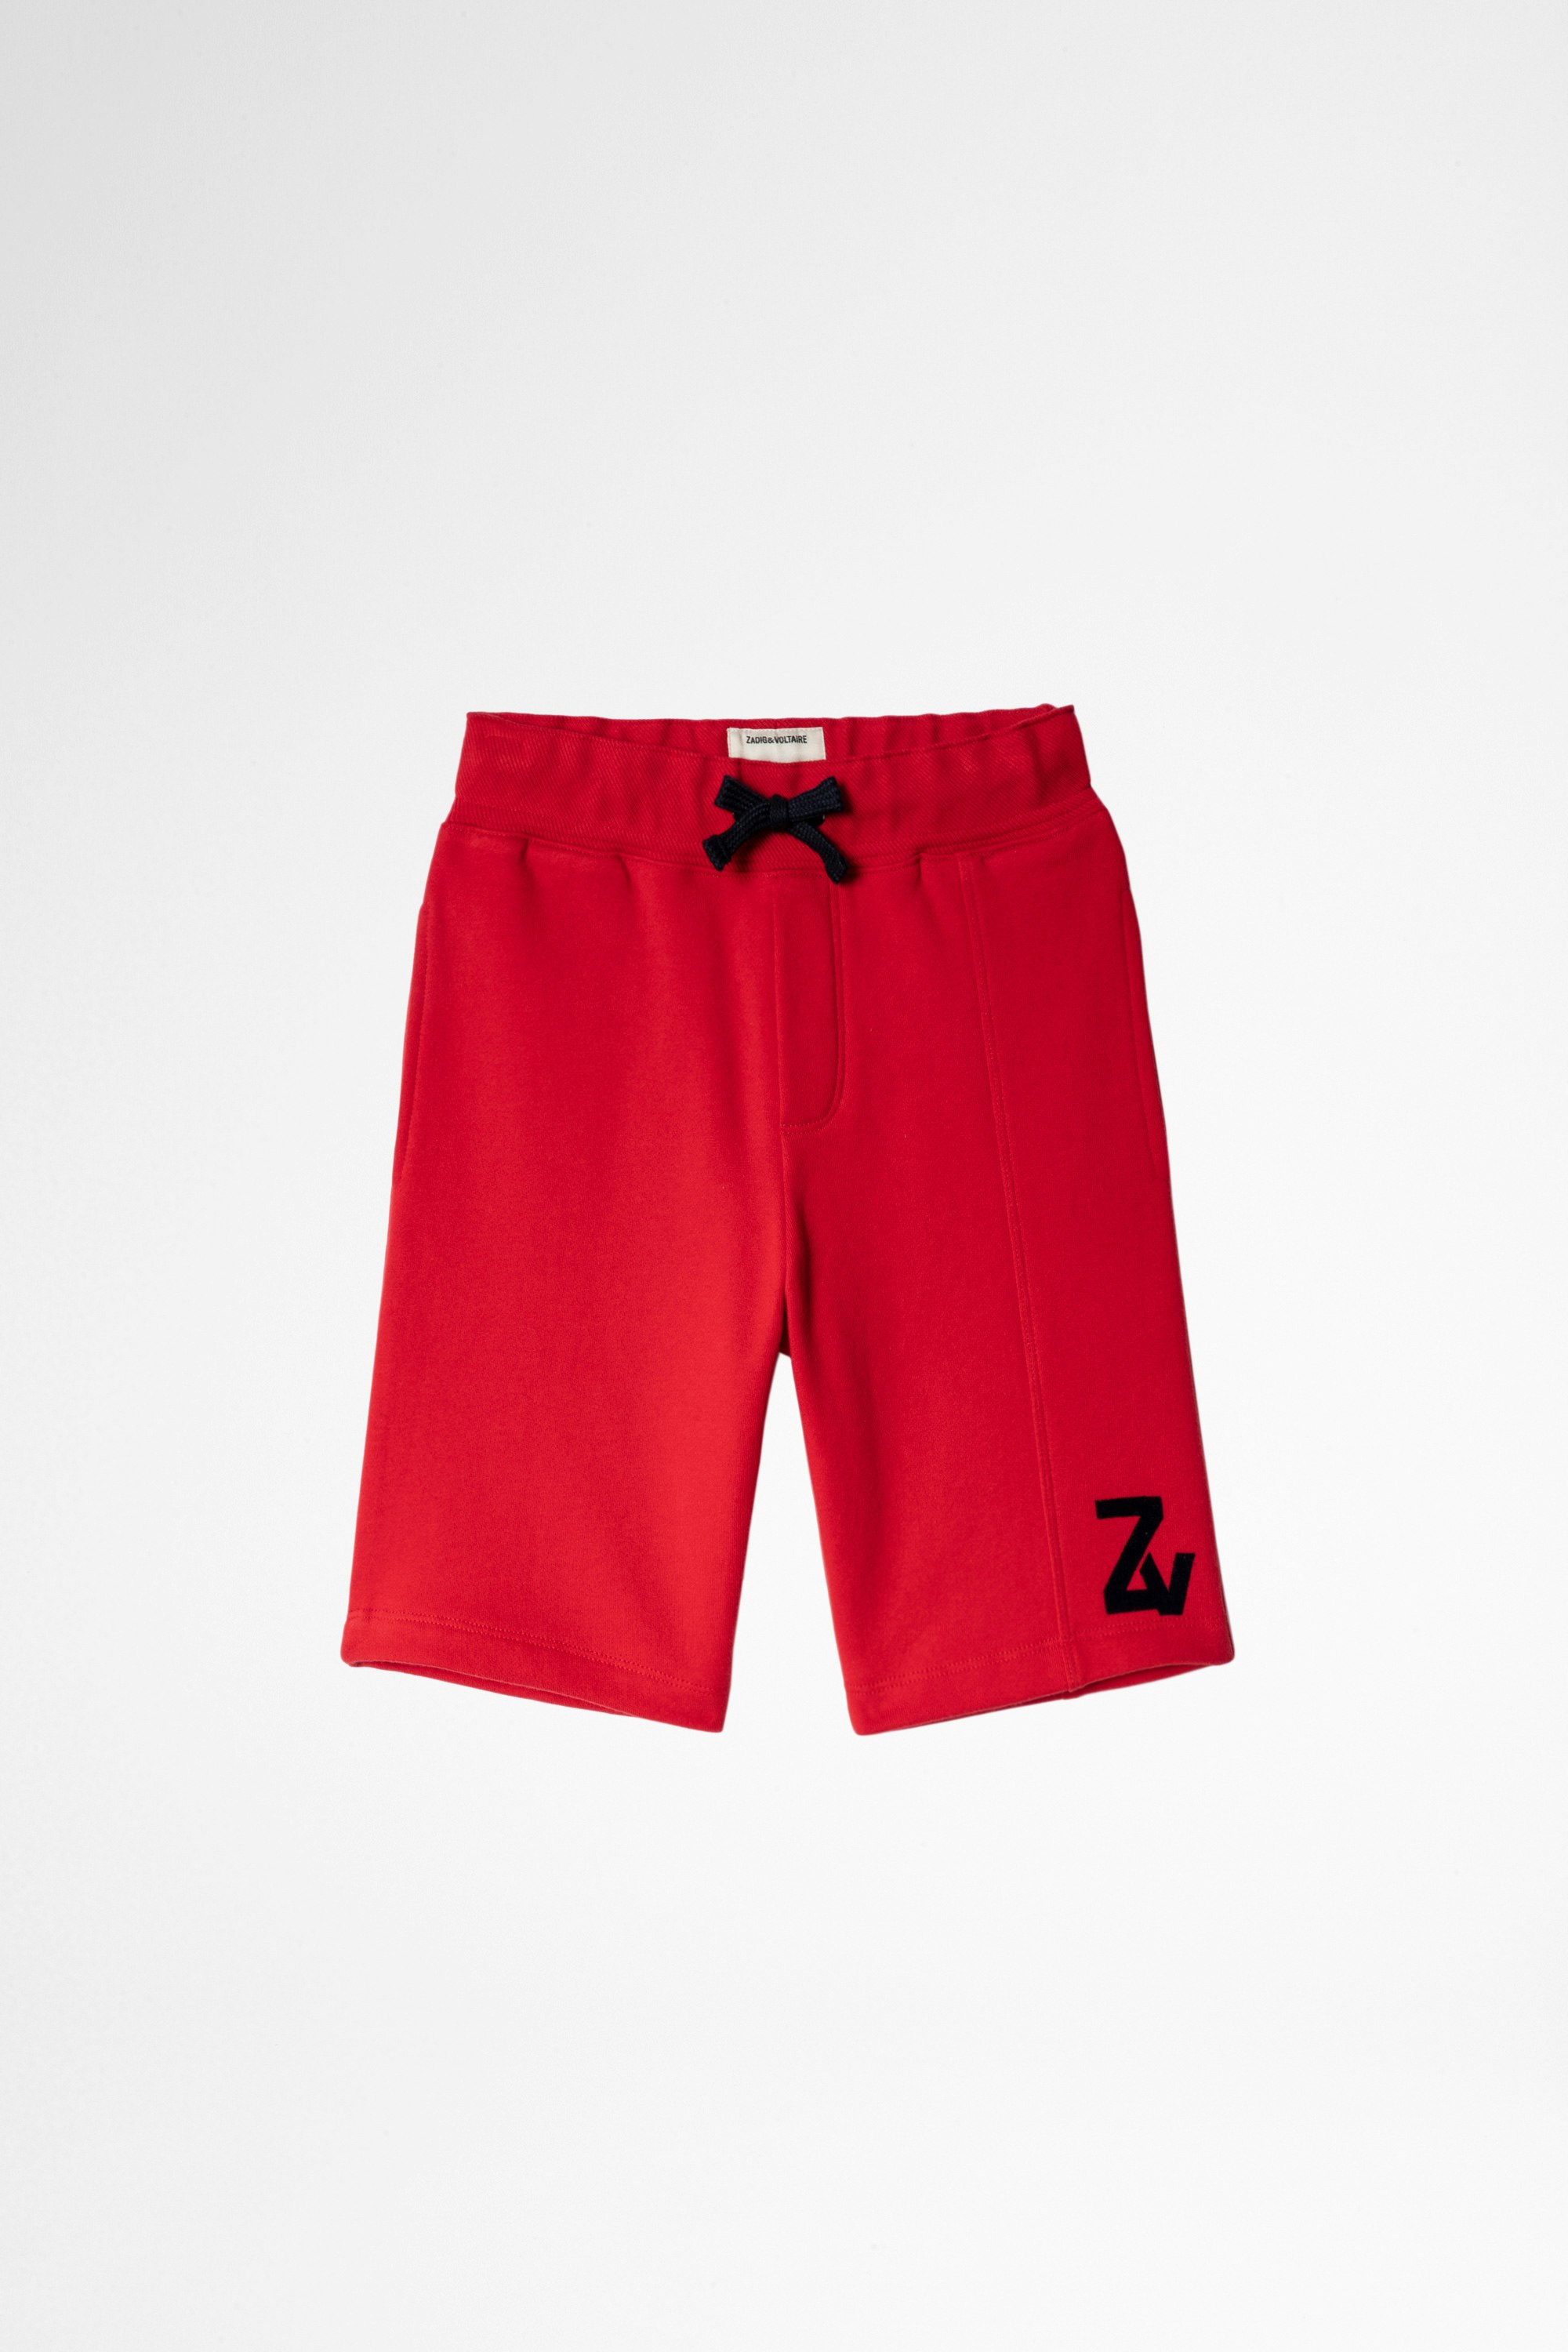 Hildana Children's Dress Children's cotton Bermuda shorts in red